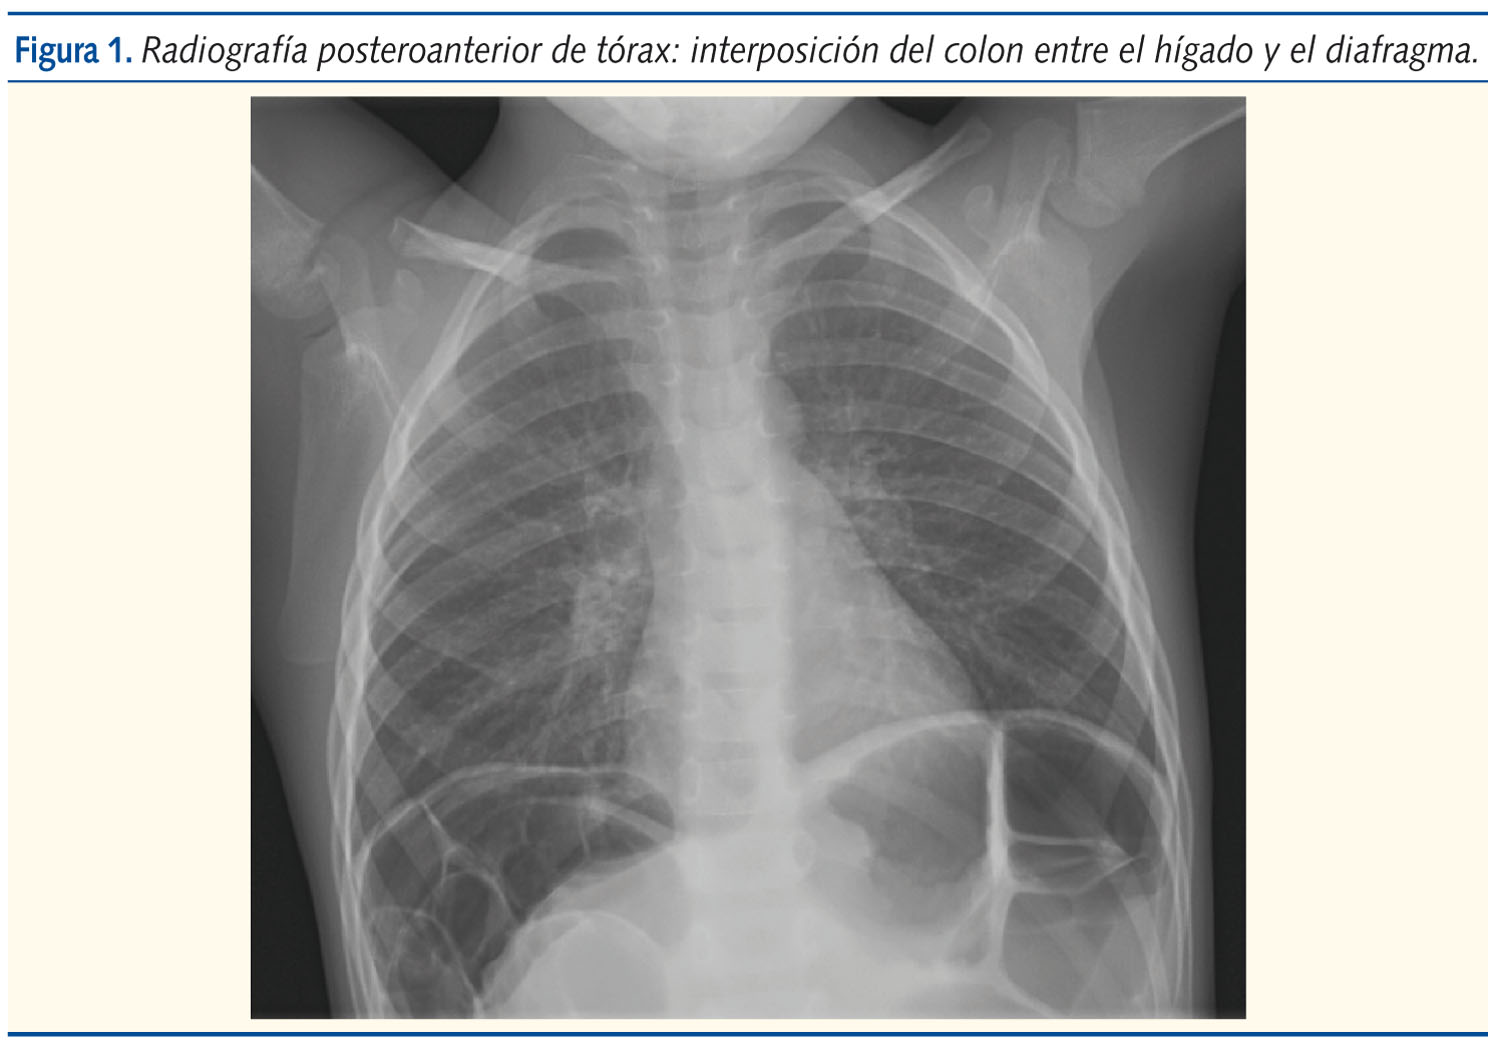 Figura 1. Radiografía posteroanterior de tórax: interposición del colon entre el hígado y el diafragma.